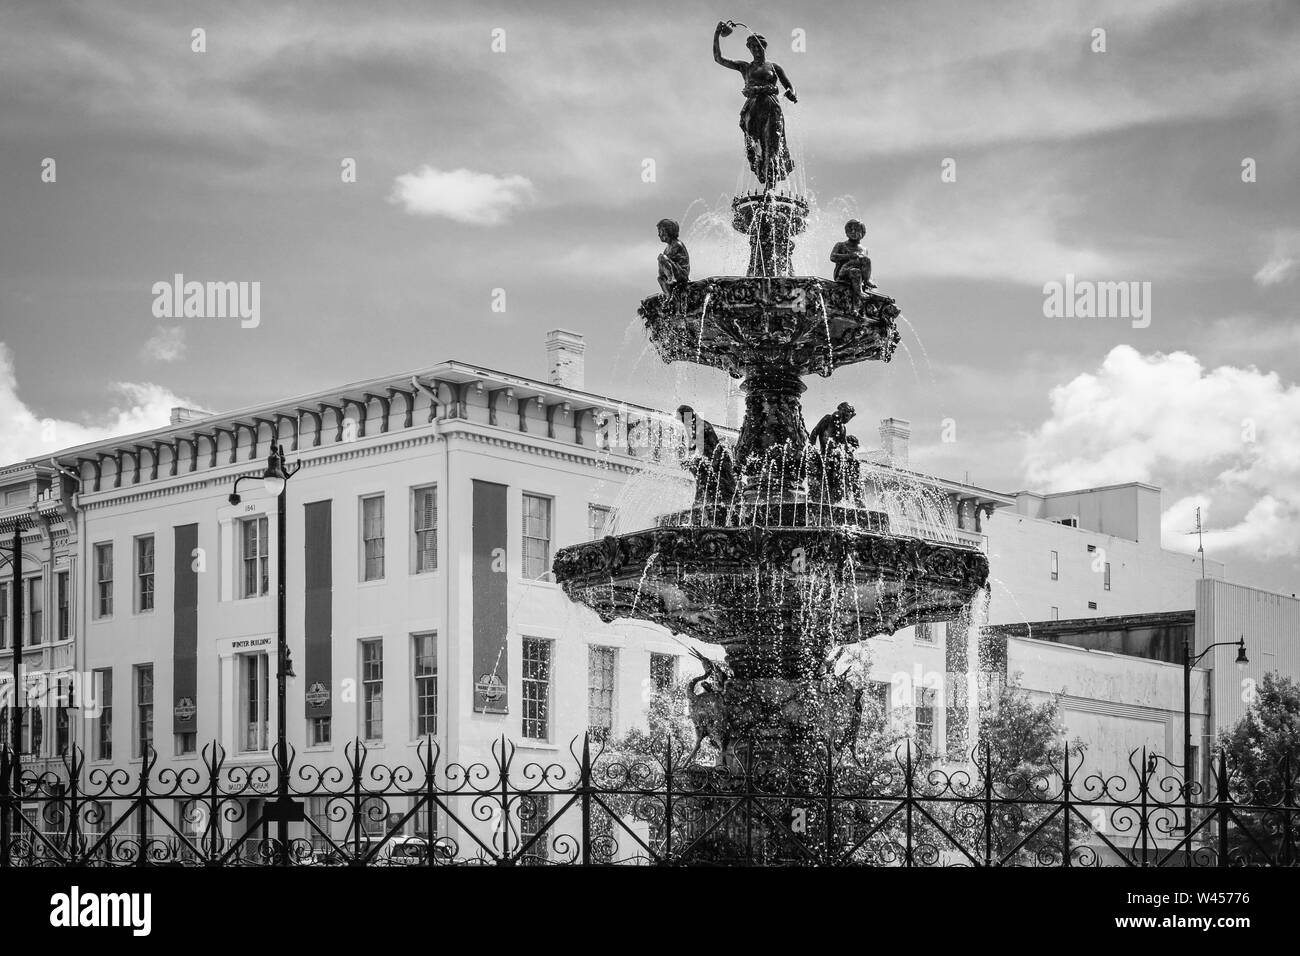 La magnifique fontaine de la place de la Cour, avec son mytholgoy stauary grec, a été mis sur le bassin artésien en 1885, le bâtiment d'hiver derrière la foun Banque D'Images